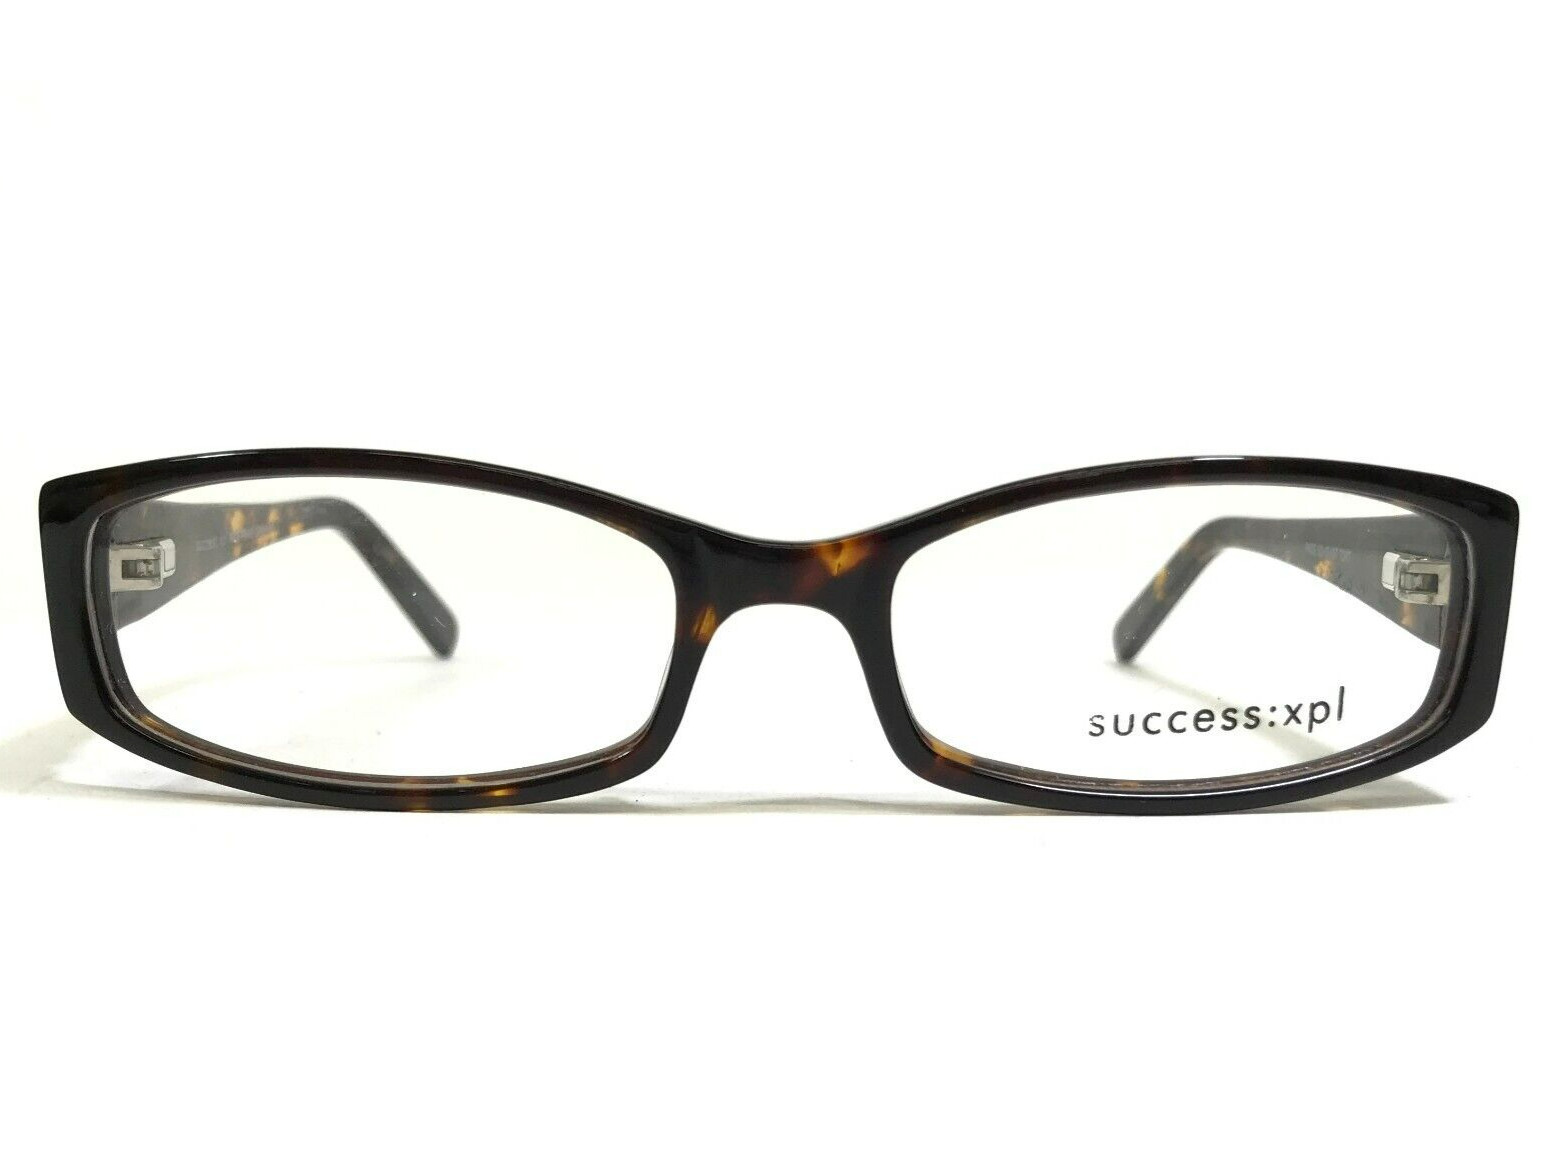 Success:Xpl Eyeglasses Frames PACE TORT Rectangular Full Rim 52-17-137